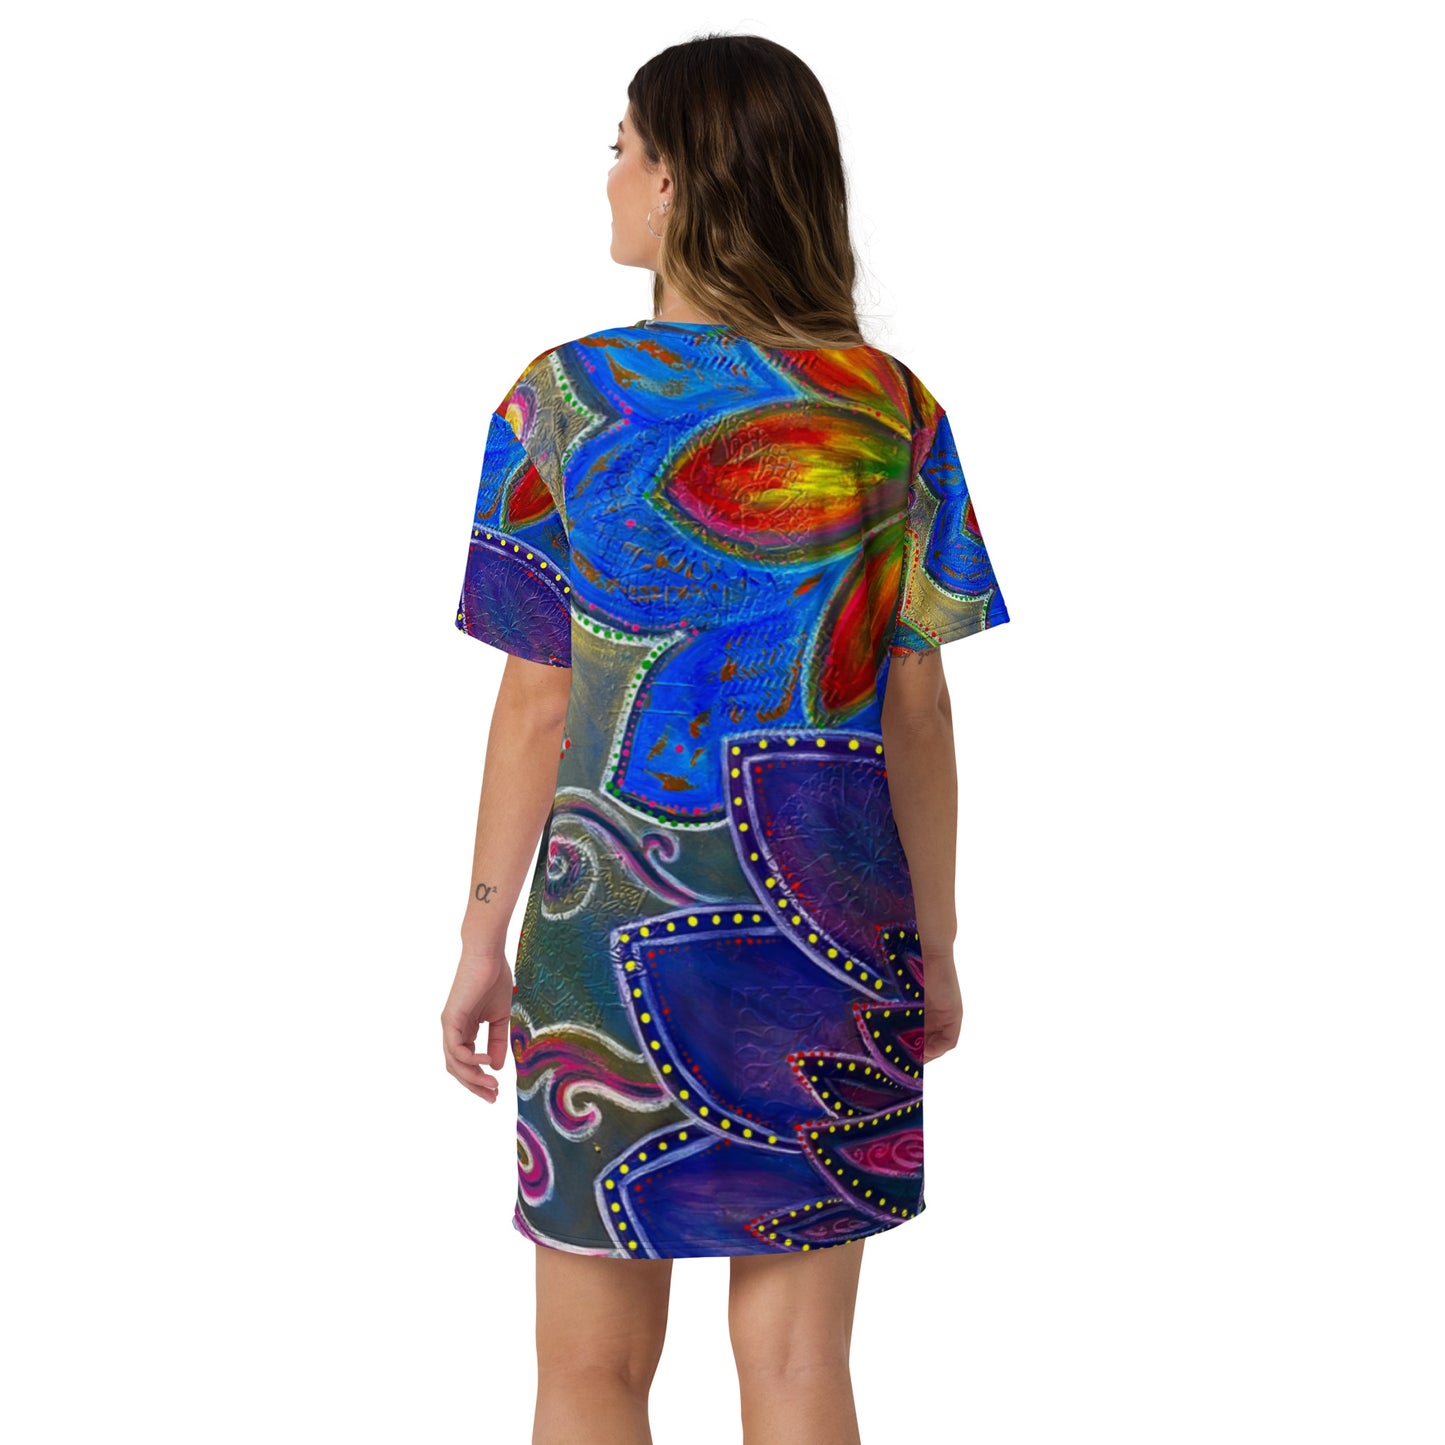 Utopian Summer T-shirt dress